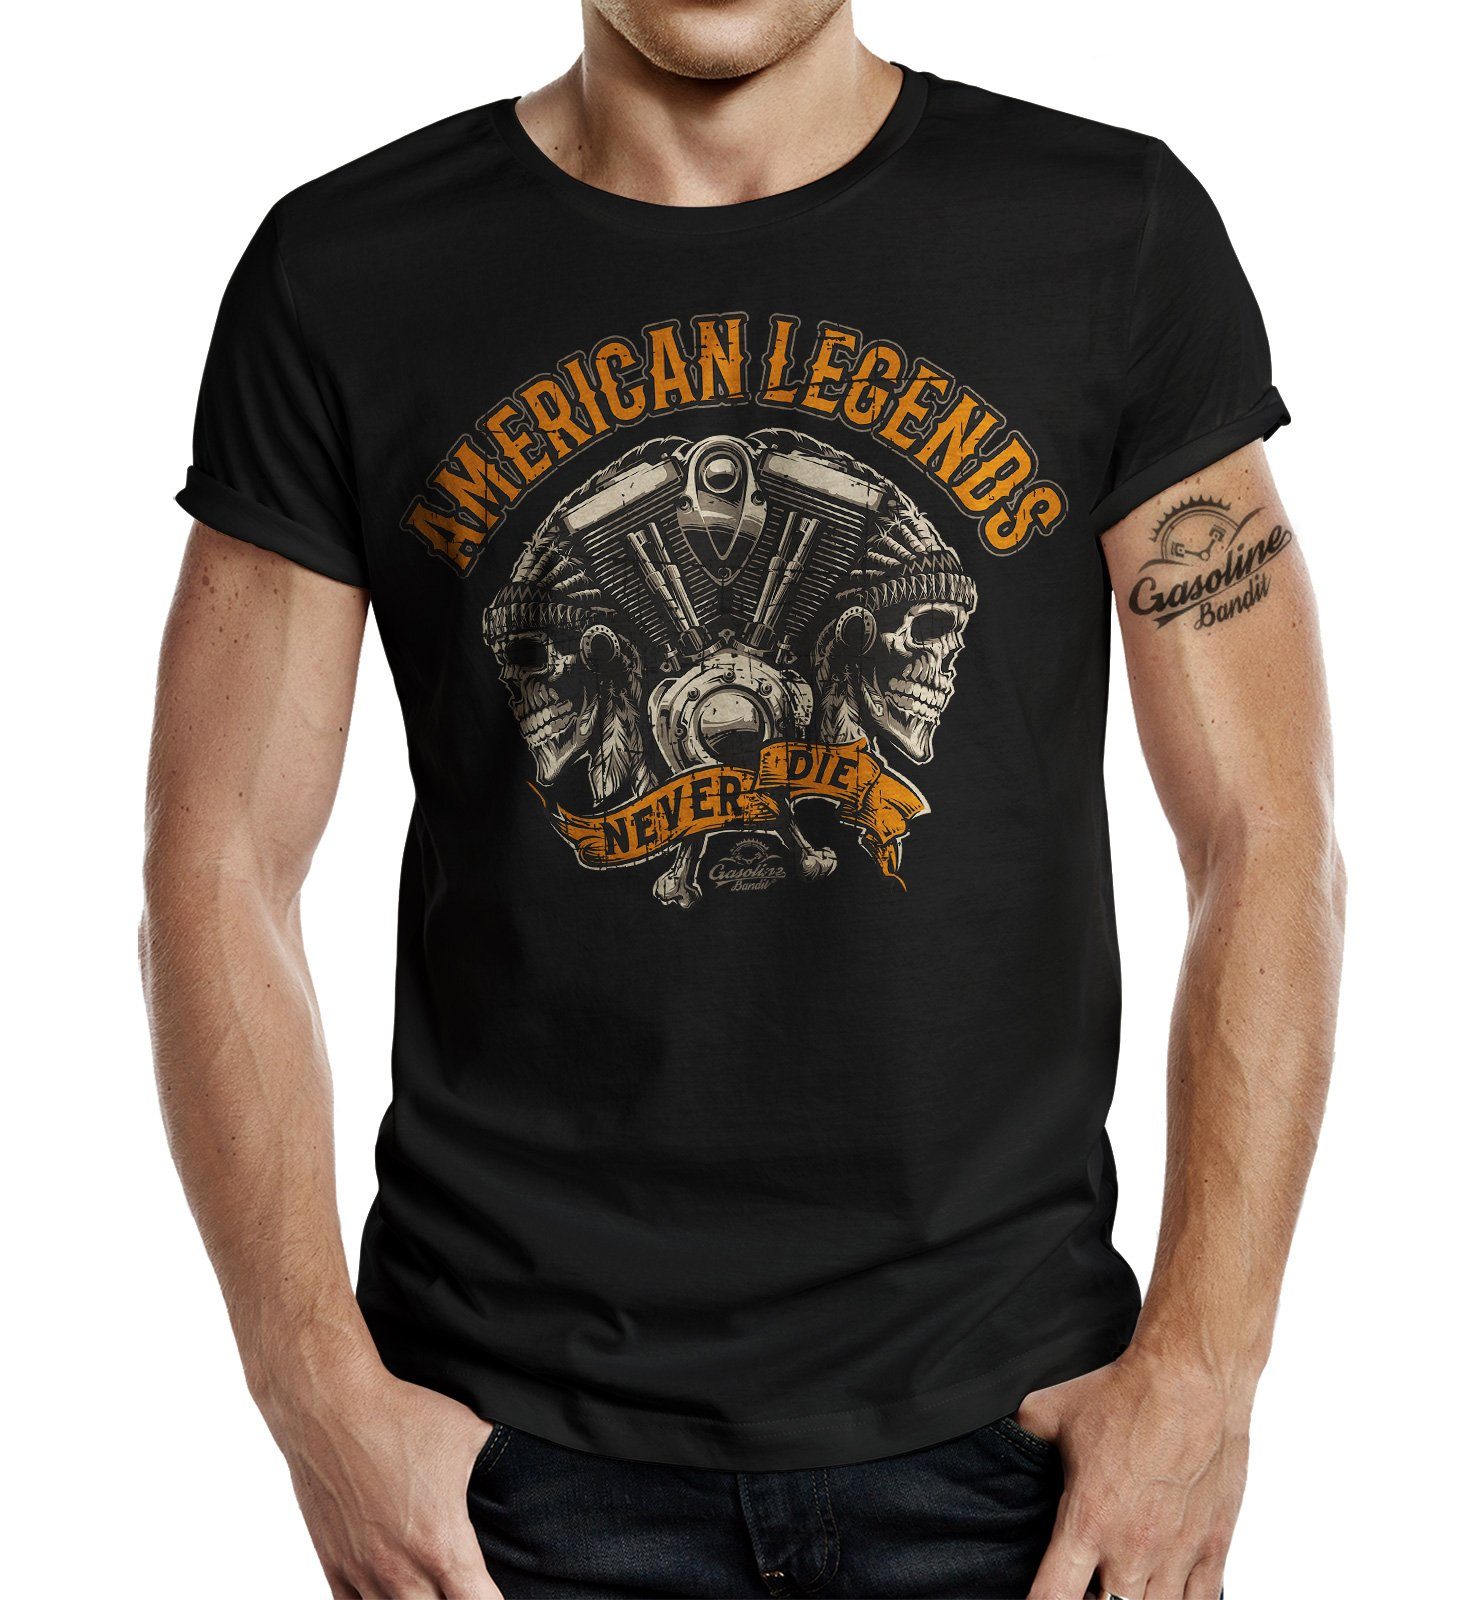 GASOLINE BANDIT® T-Shirt für US Biker Fans: American Legends Never Die